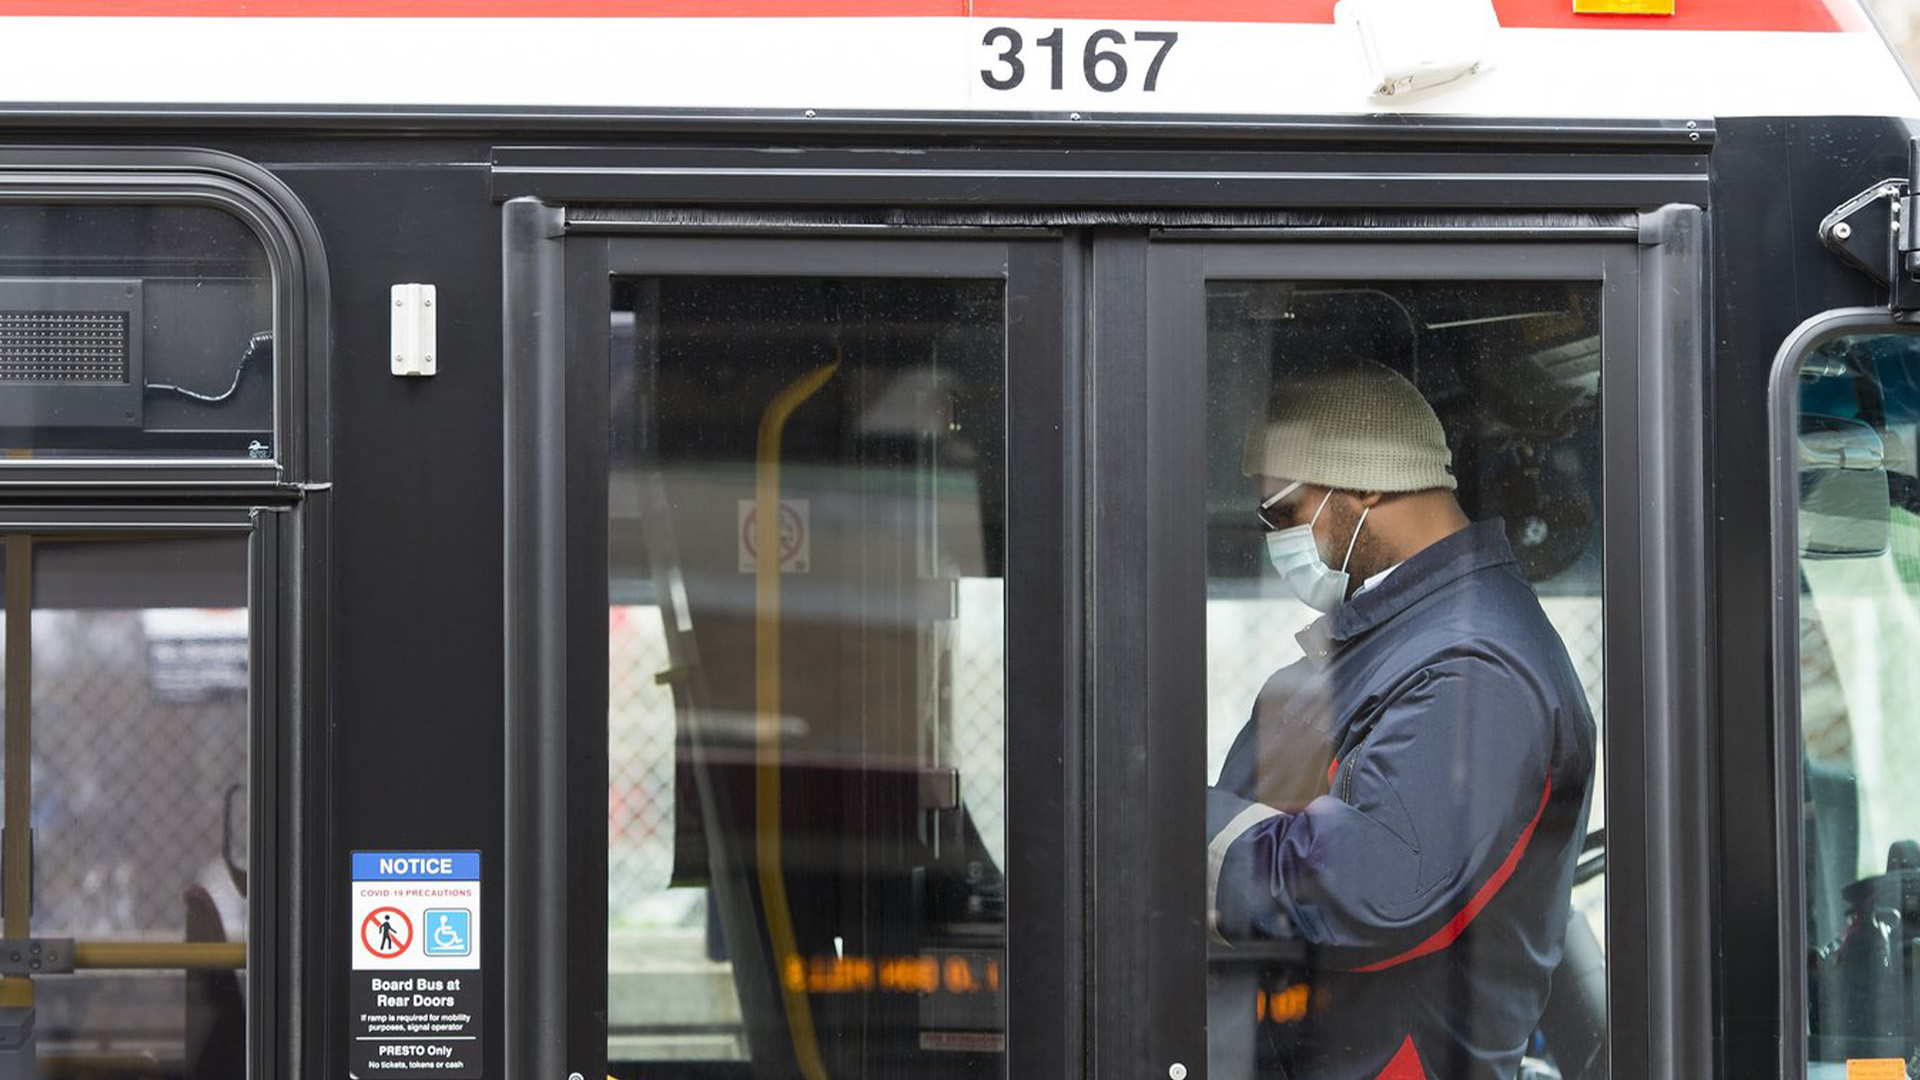 Un travailleur de la TTC est montré dans un autobus pendant son quart de travail à Toronto le 23 avril 2020. La police continue d'enquêter après que jusqu'à 15 jeunes auraient attaqué deux employés de la Toronto Transit Commission dans un autobus.